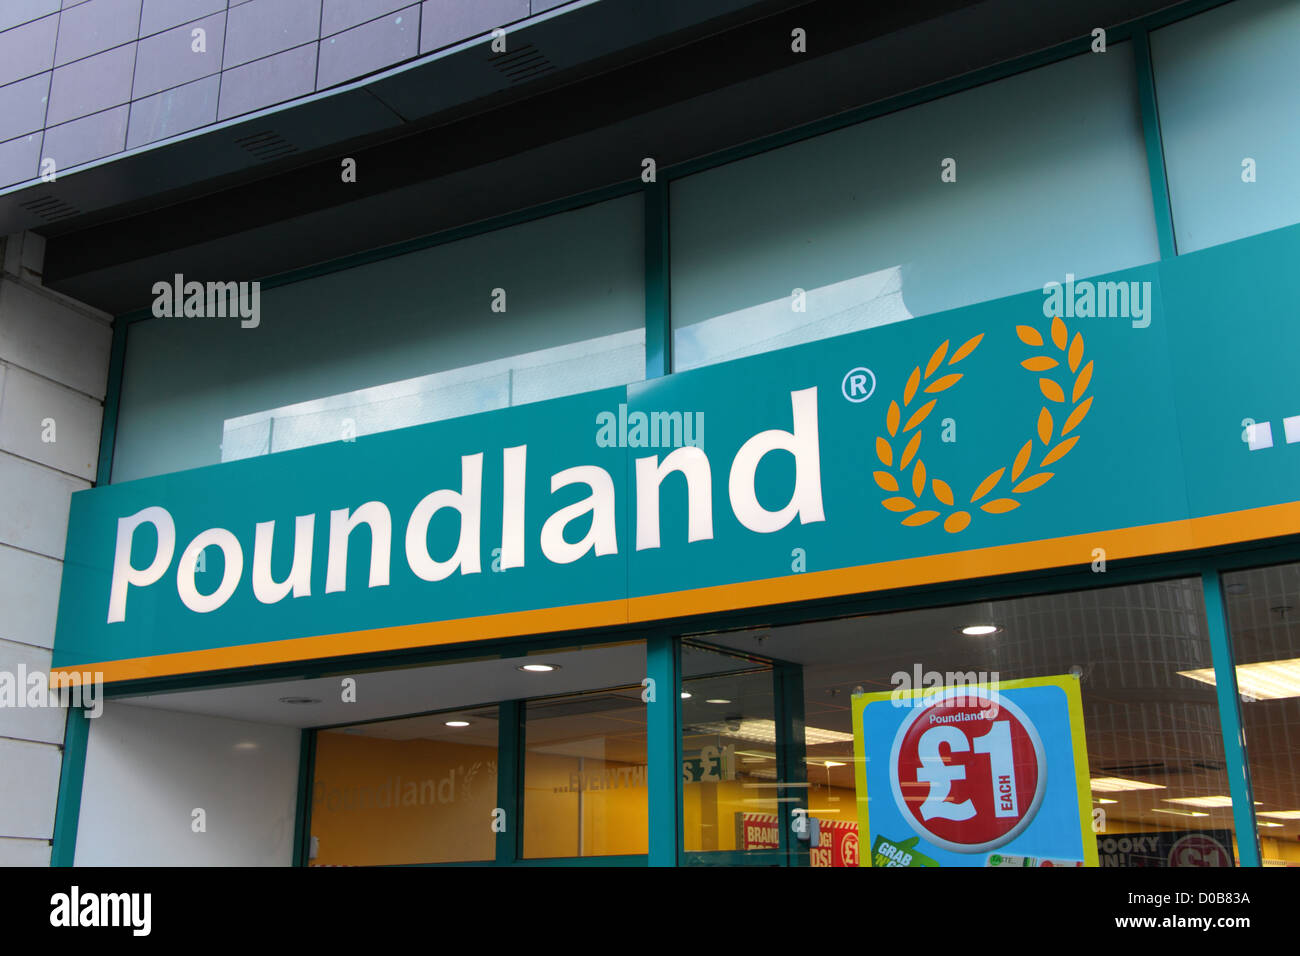 Poundland signage Stock Photo